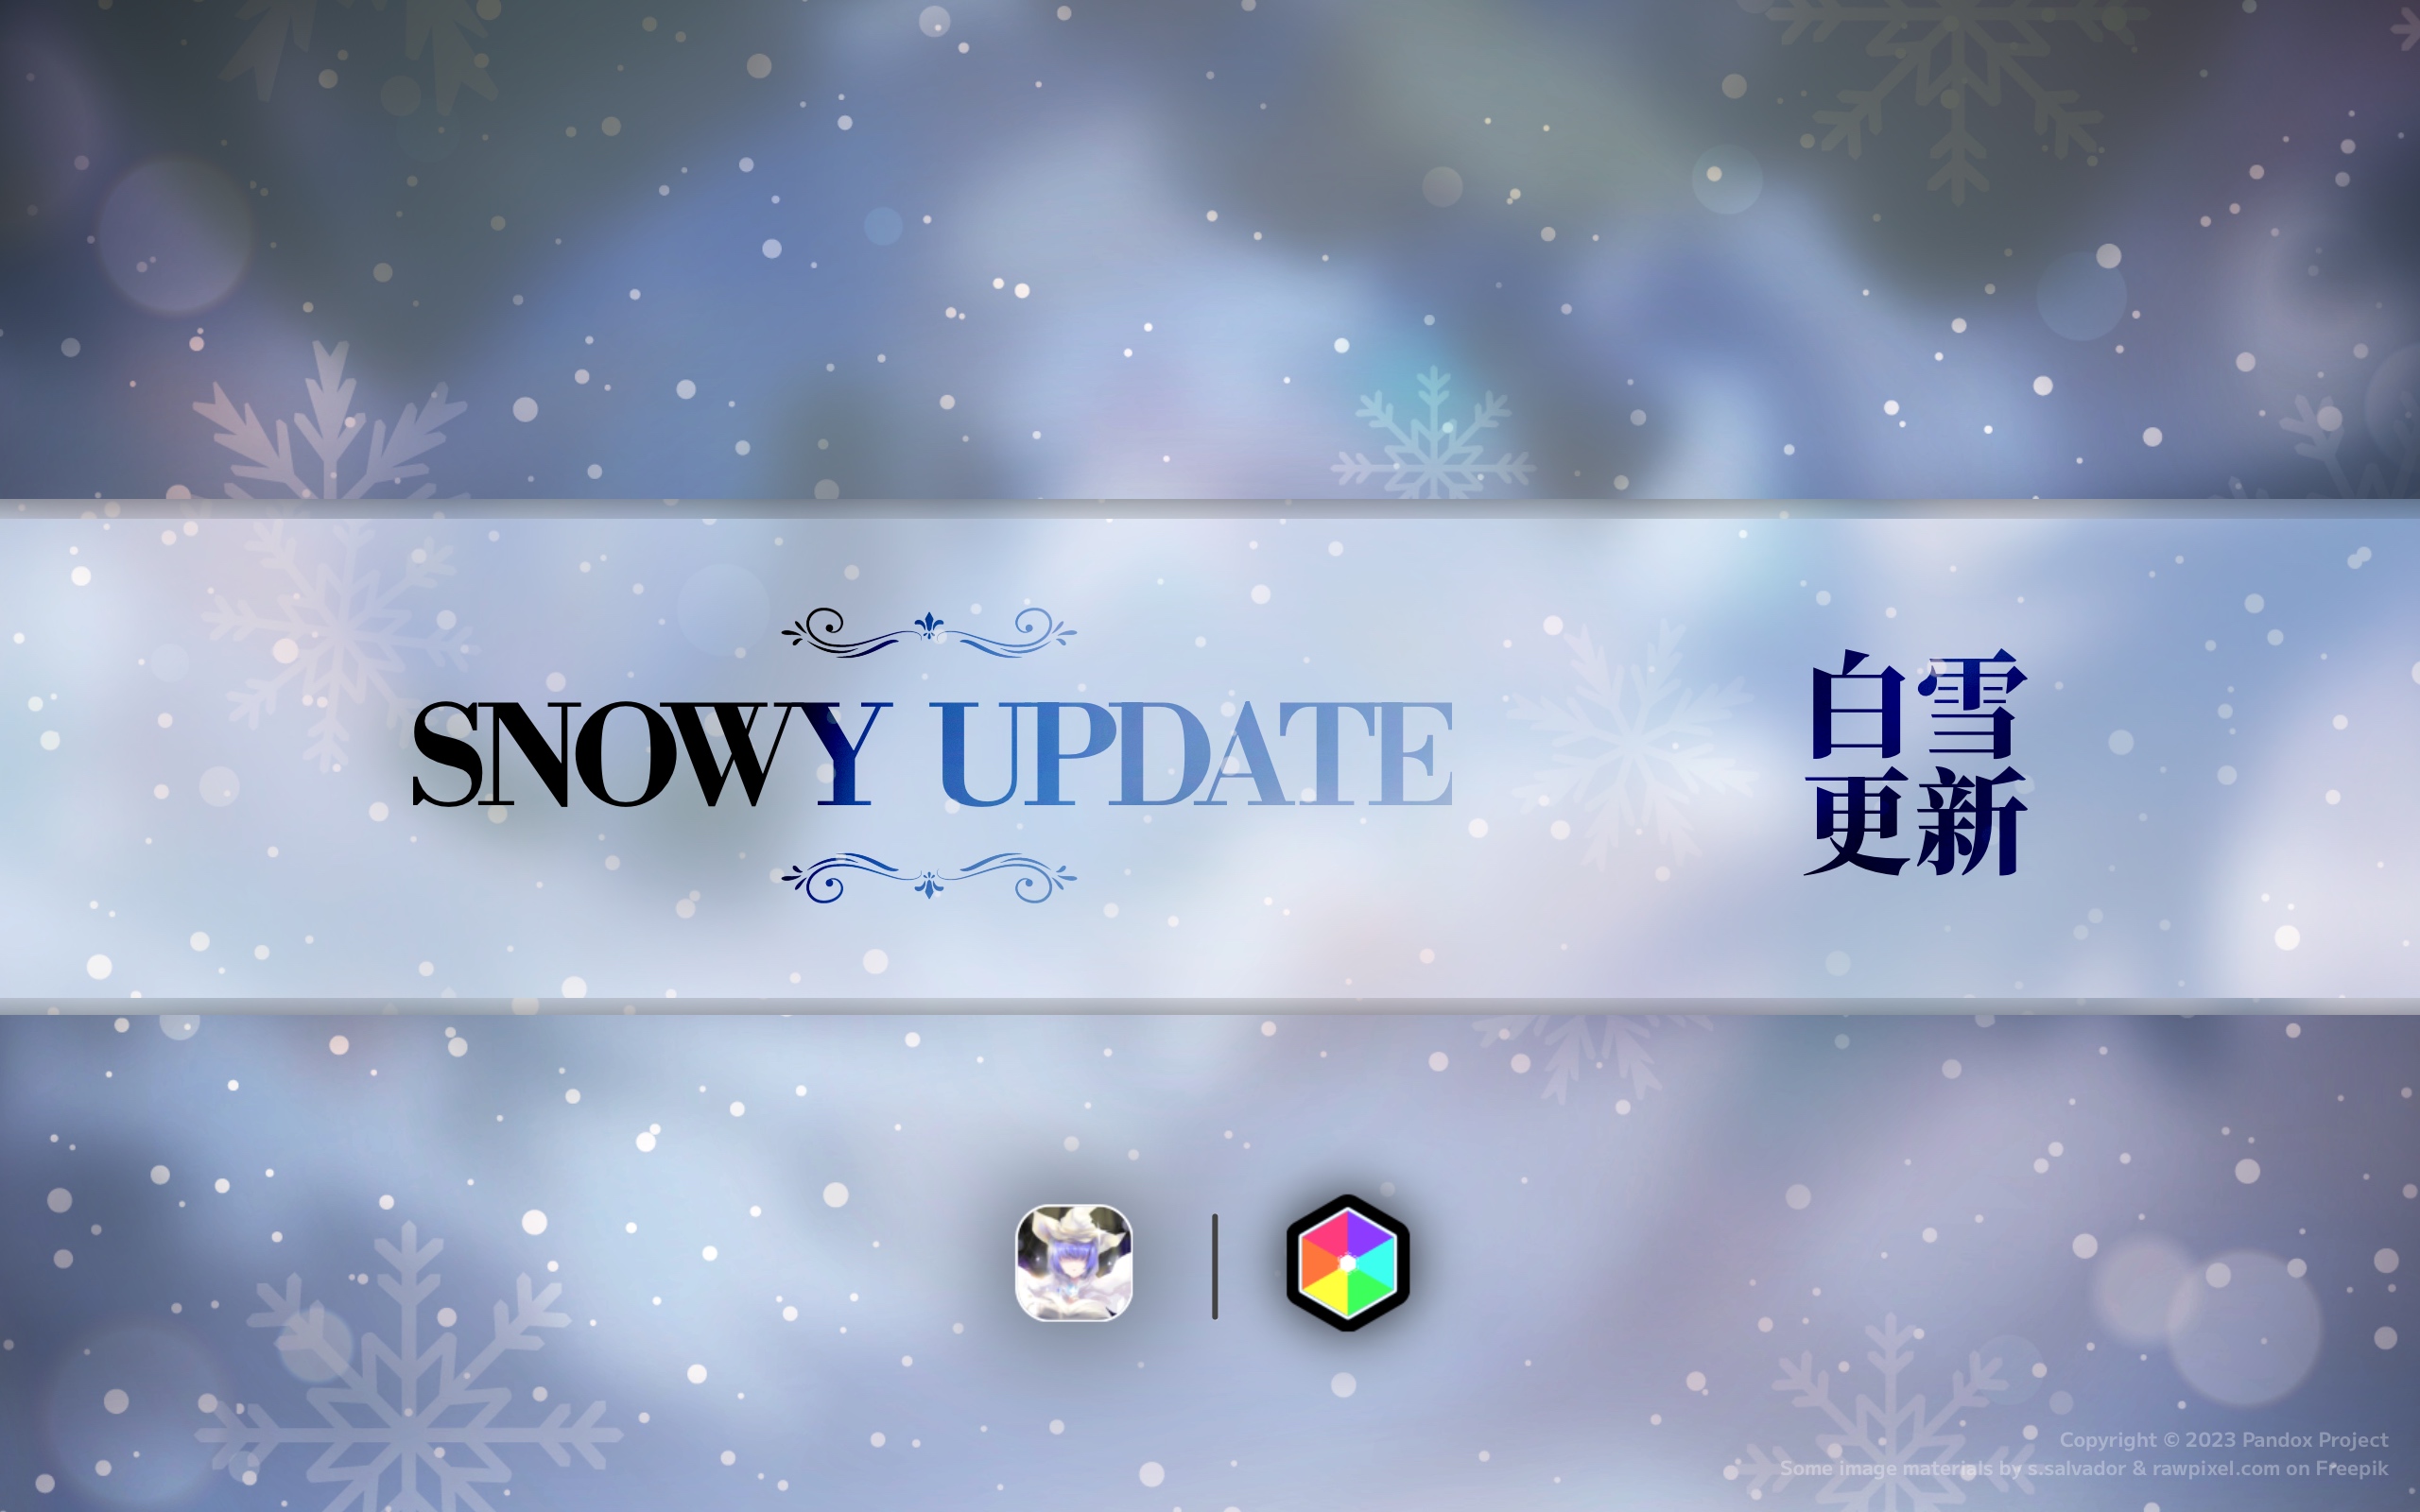 白雪更新 Snowy Update 内容预览 | Early Access